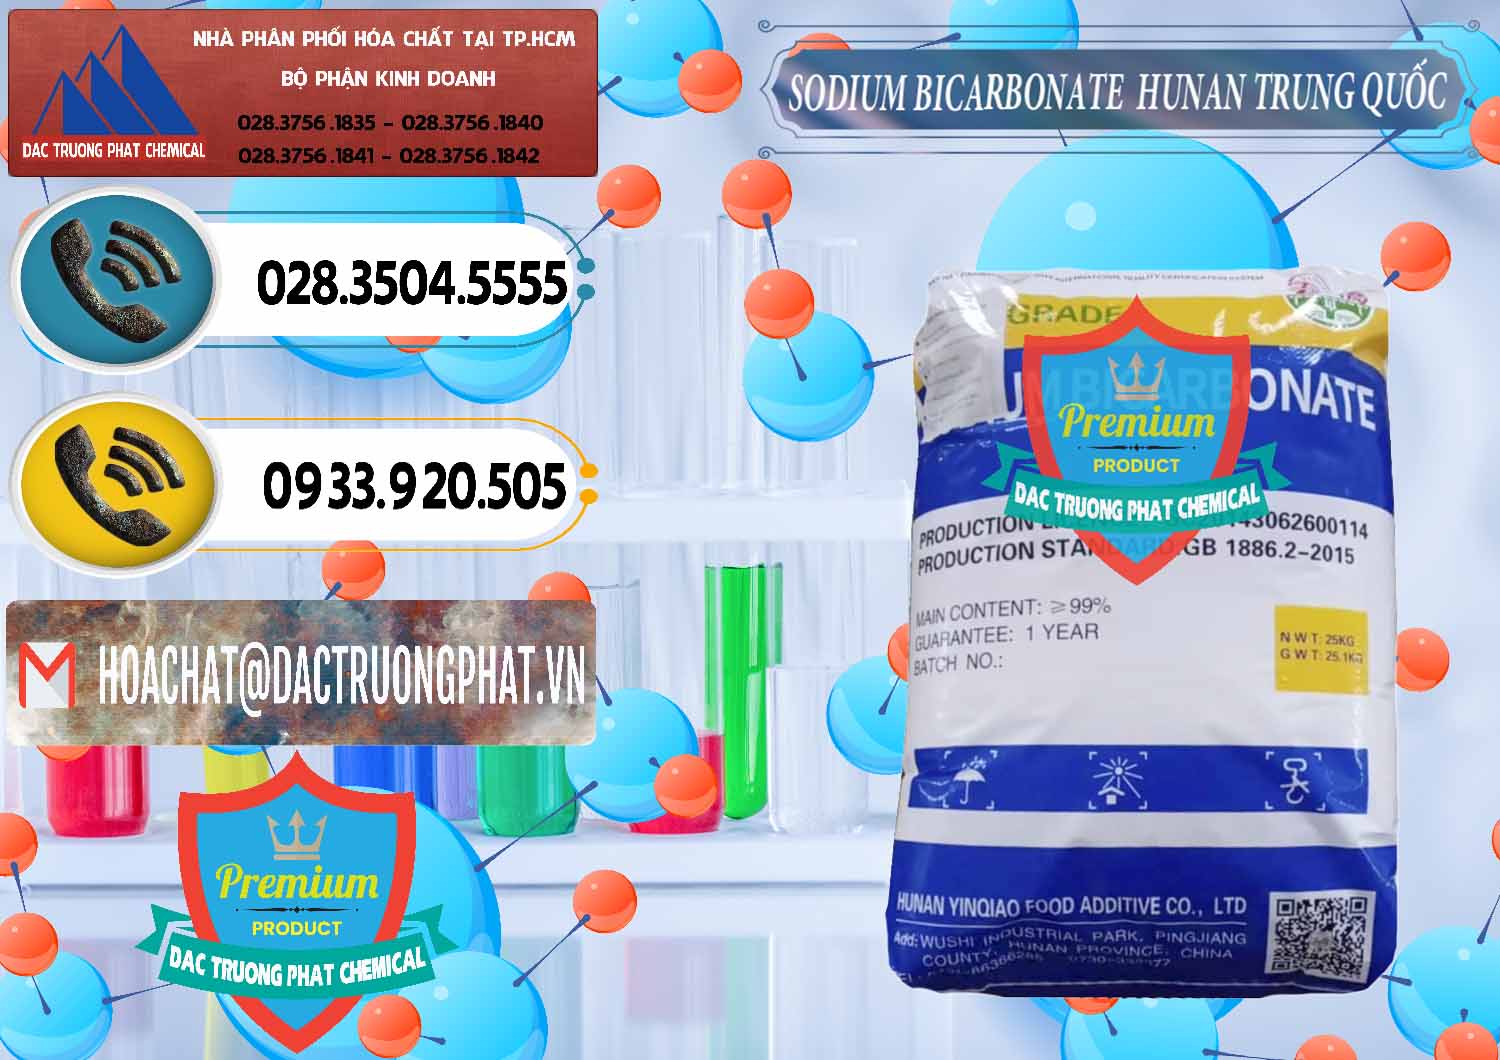 Chuyên bán và cung ứng Sodium Bicarbonate – Bicar NaHCO3 Hunan Trung Quốc China - 0405 - Chuyên kinh doanh _ phân phối hóa chất tại TP.HCM - hoachatdetnhuom.vn